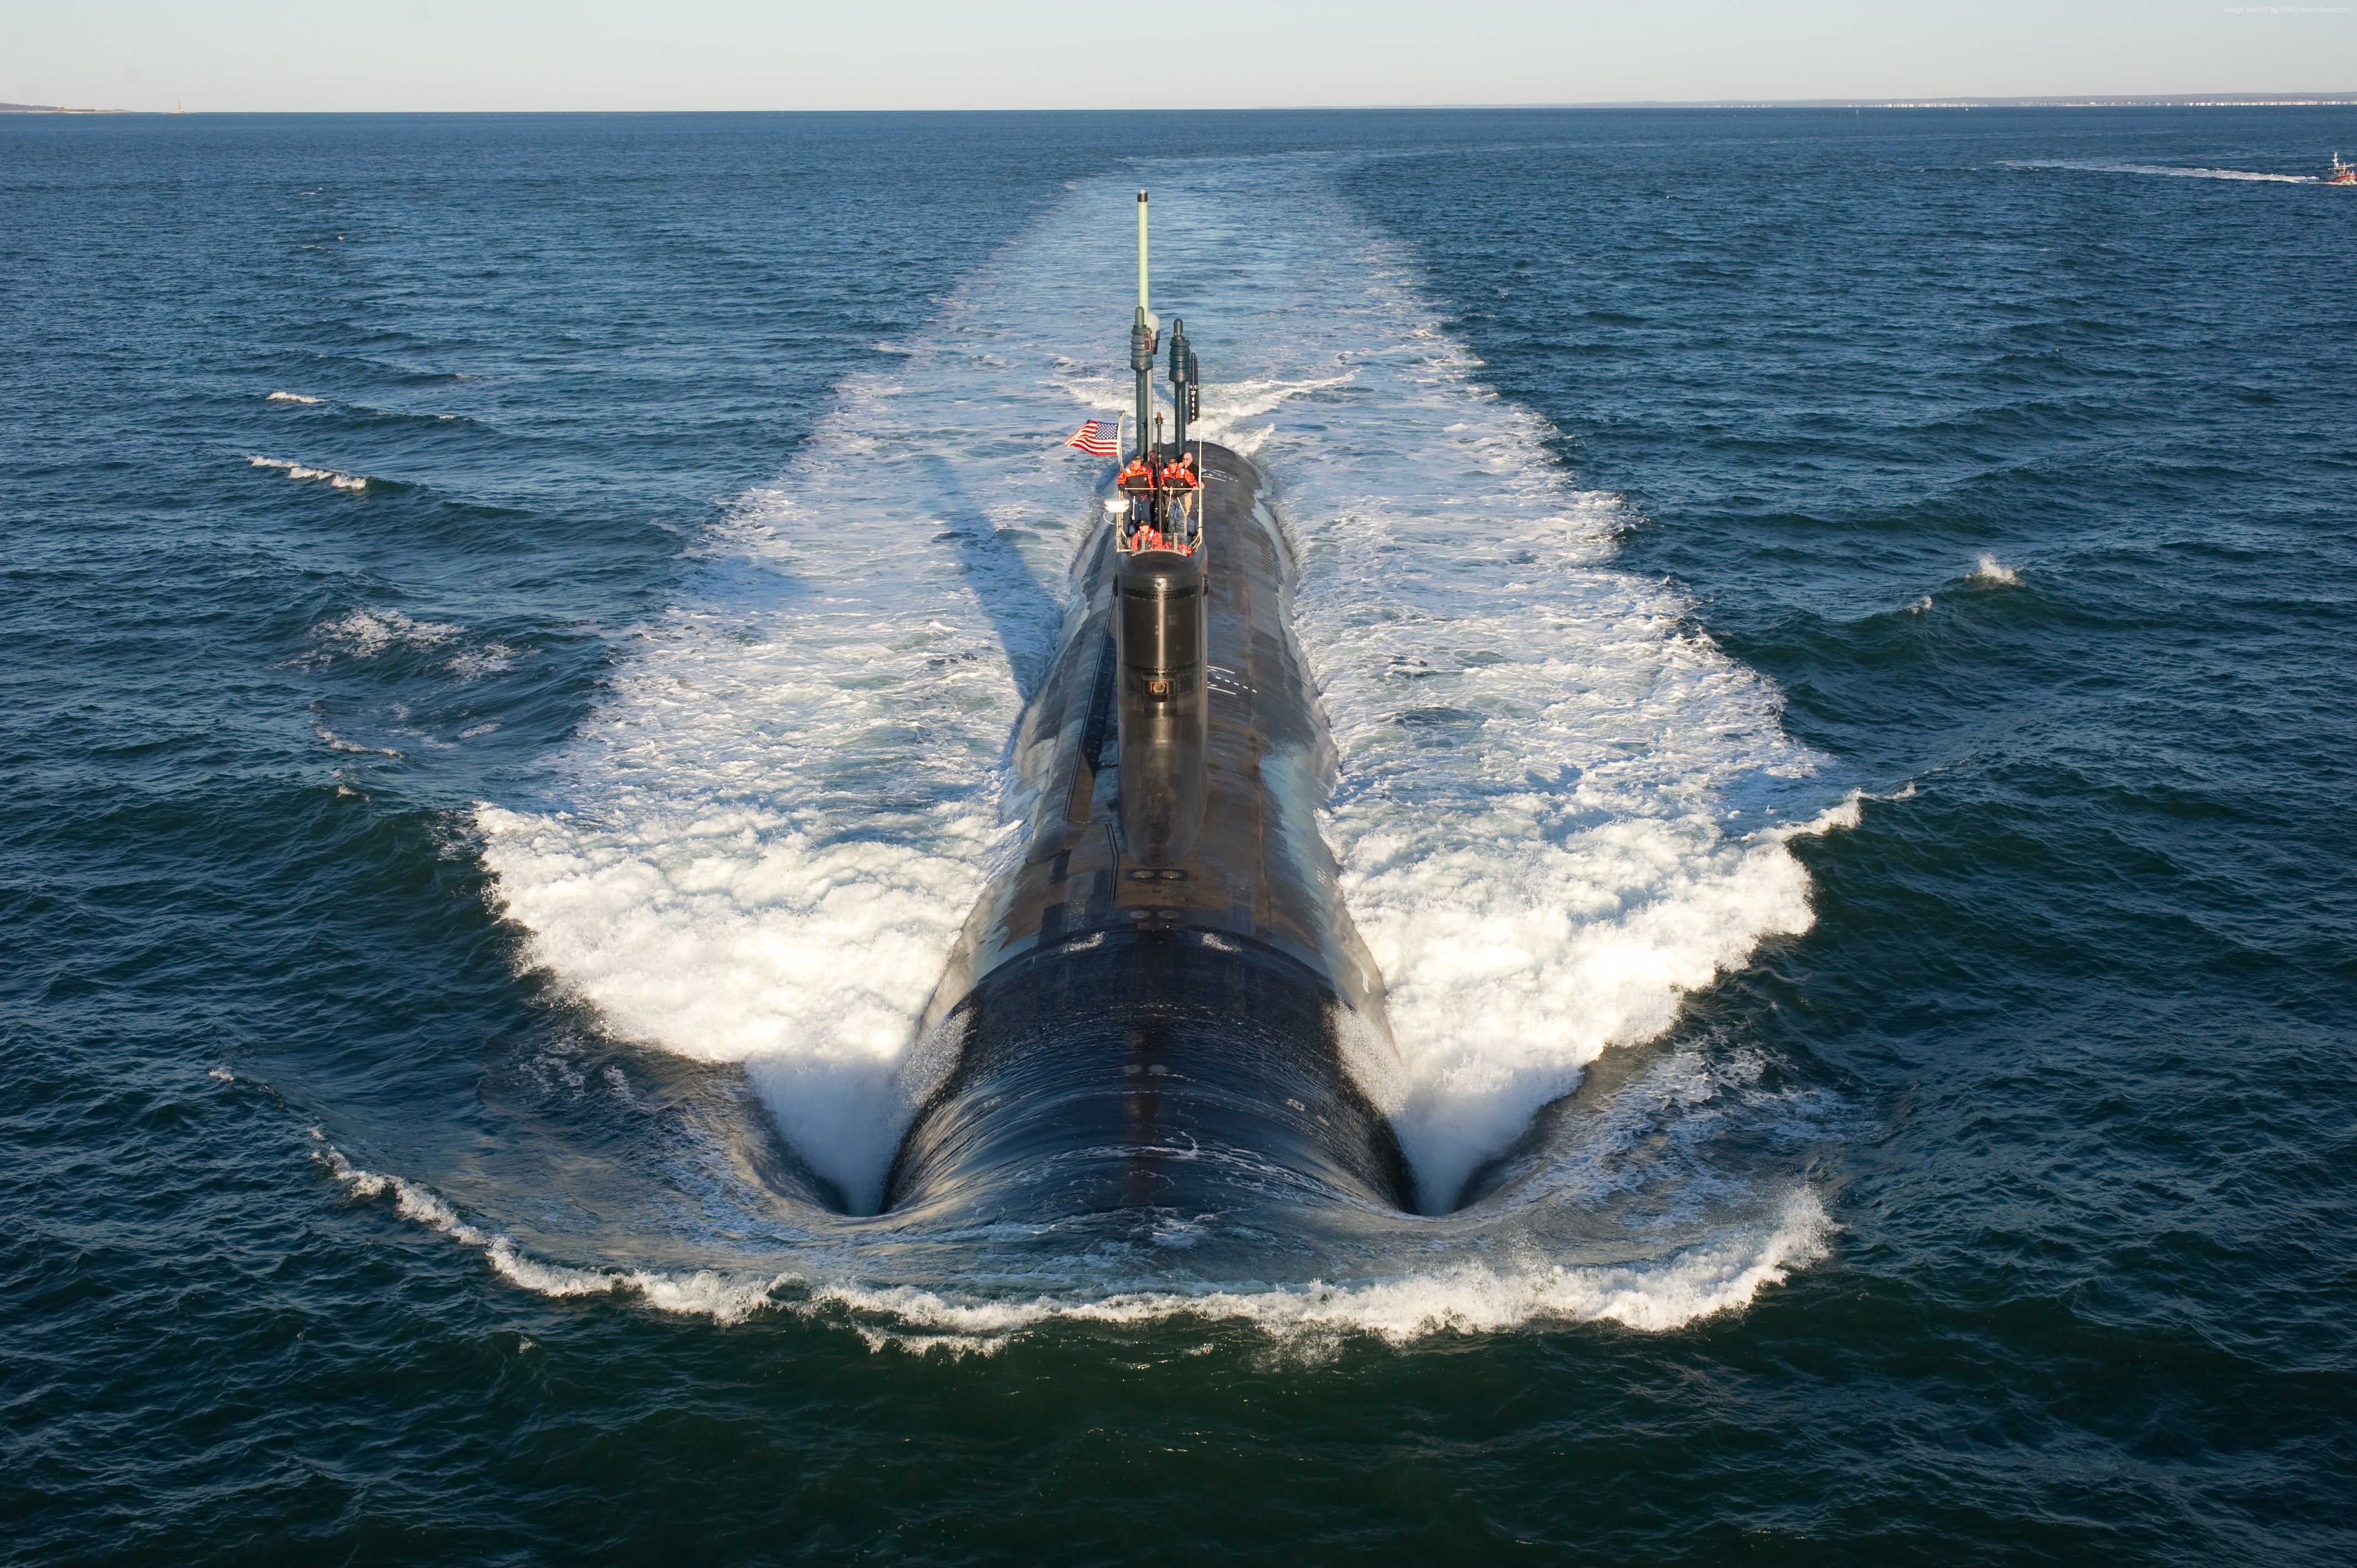 عکس استوک زیردریایی بزرگ در حال خروج از آب با کیفیت بالا 